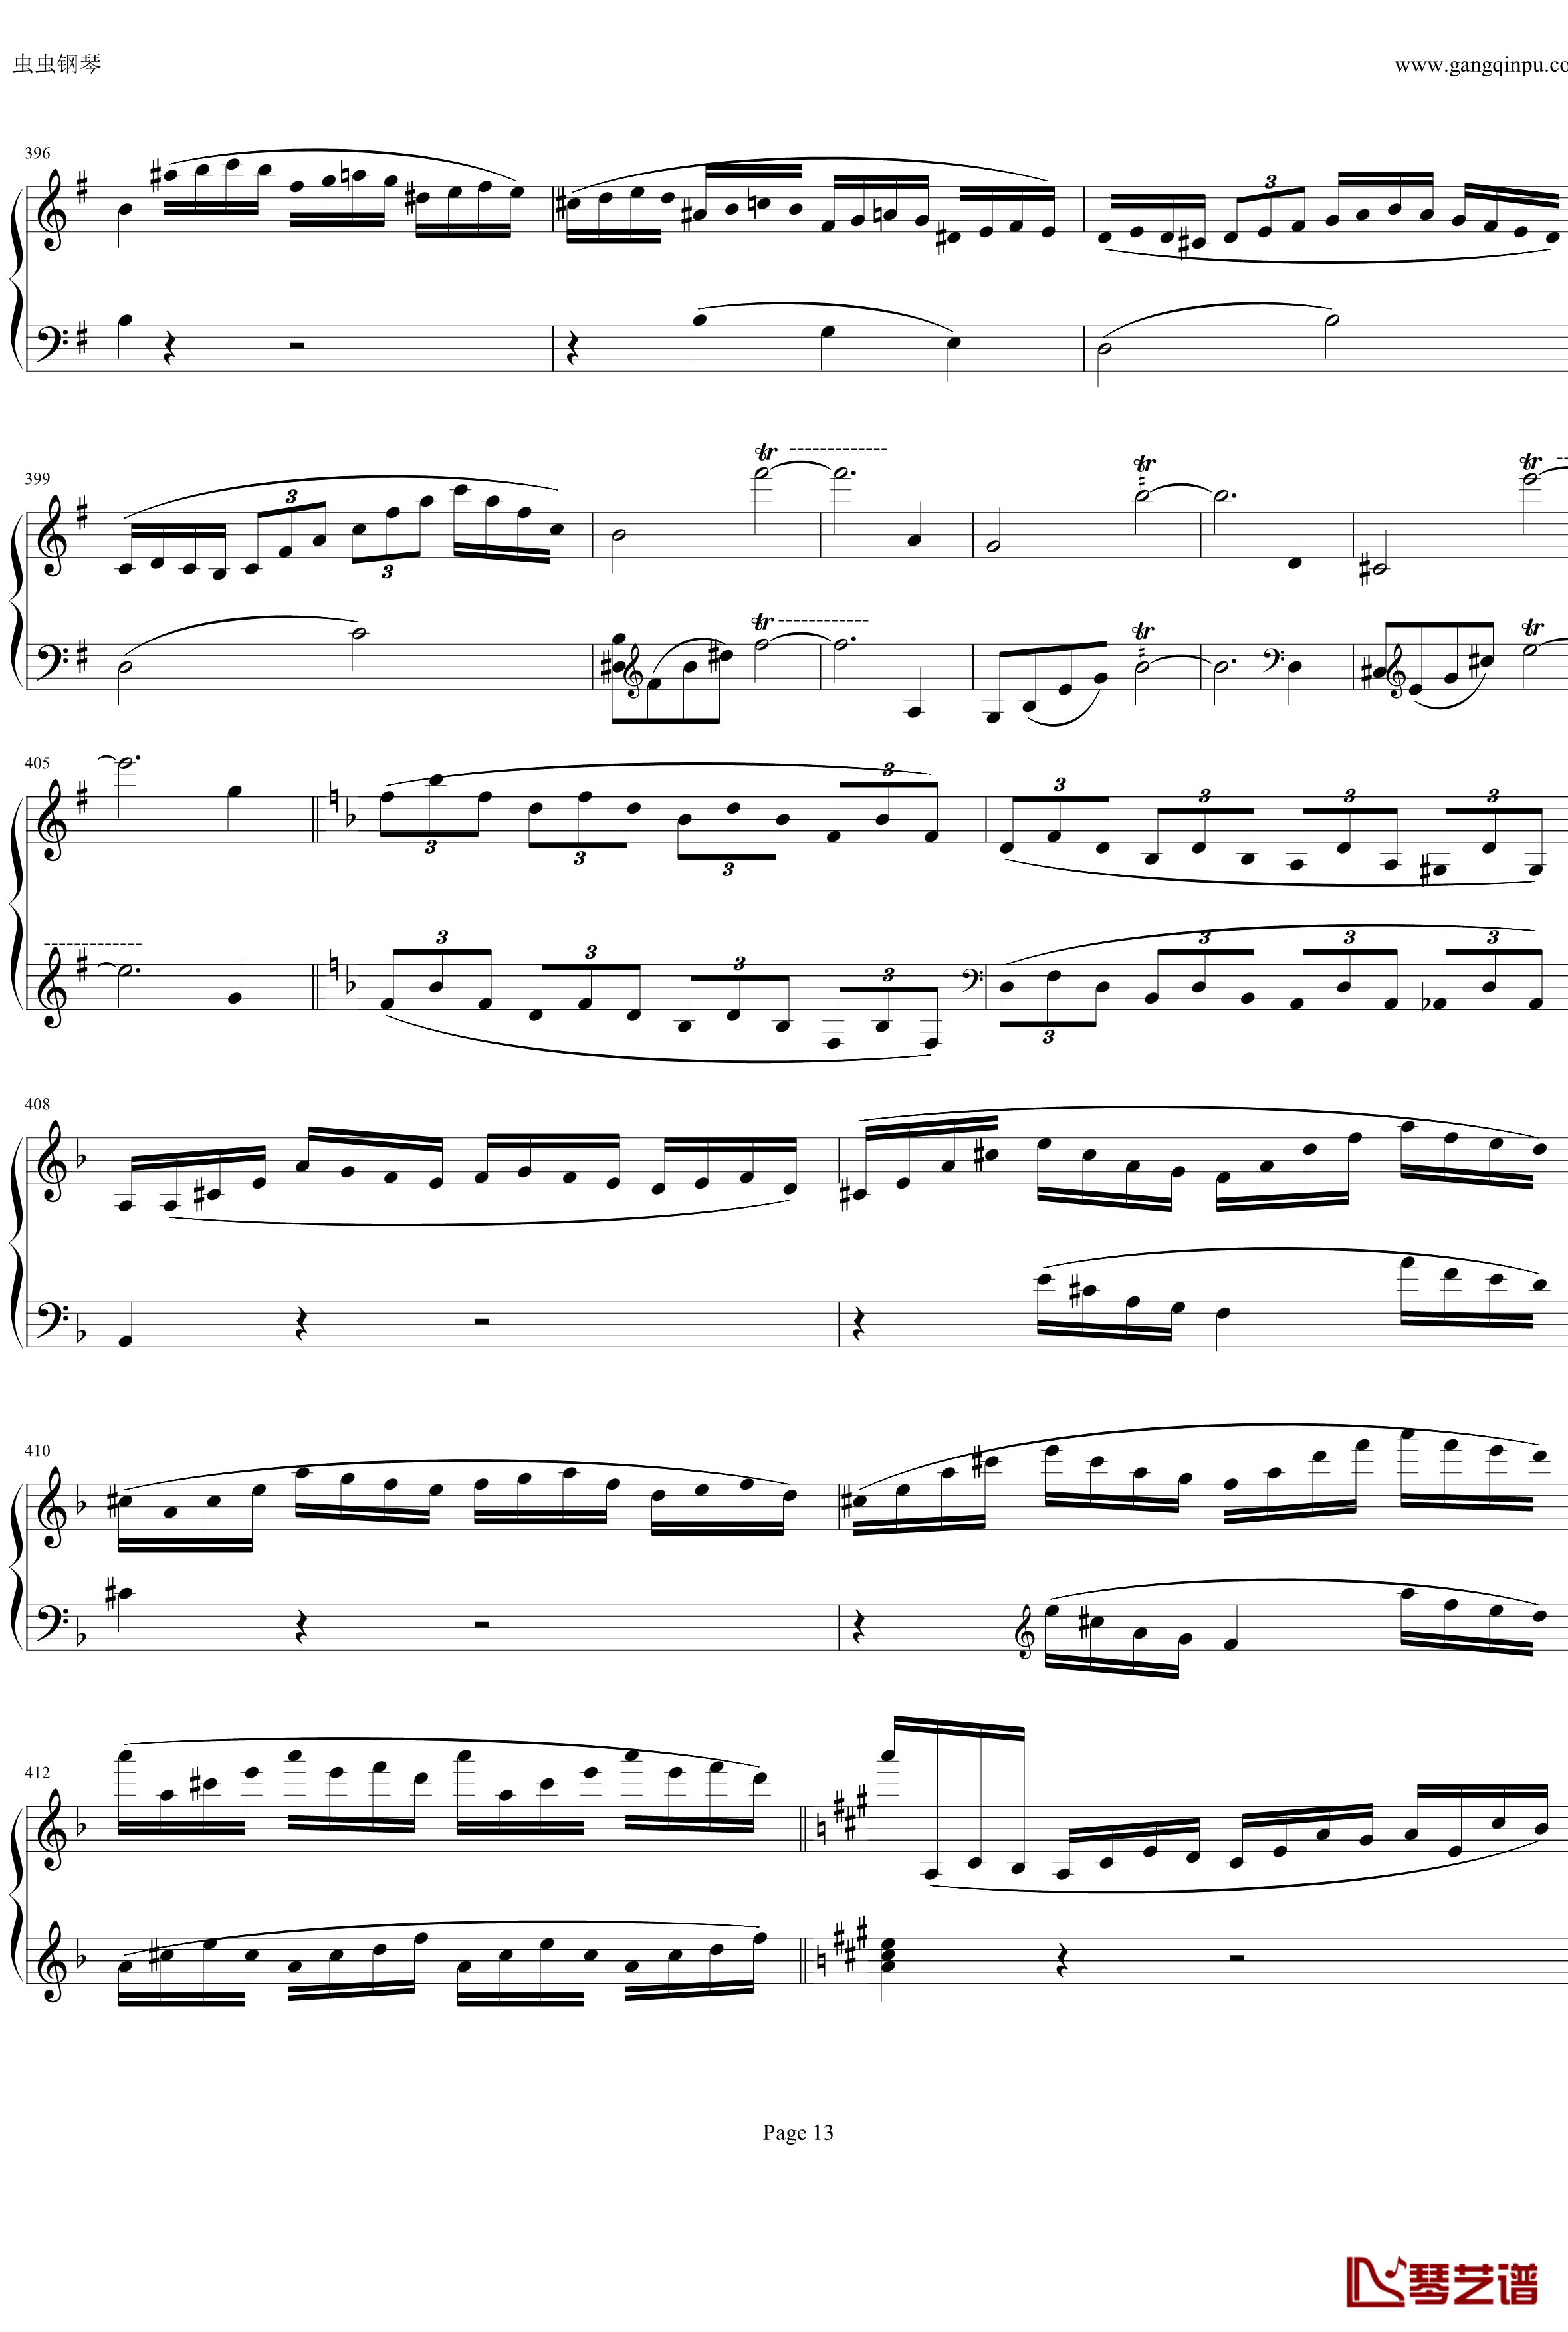 钢琴协奏曲Op61第一乐章钢琴谱-贝多芬-beethoven13